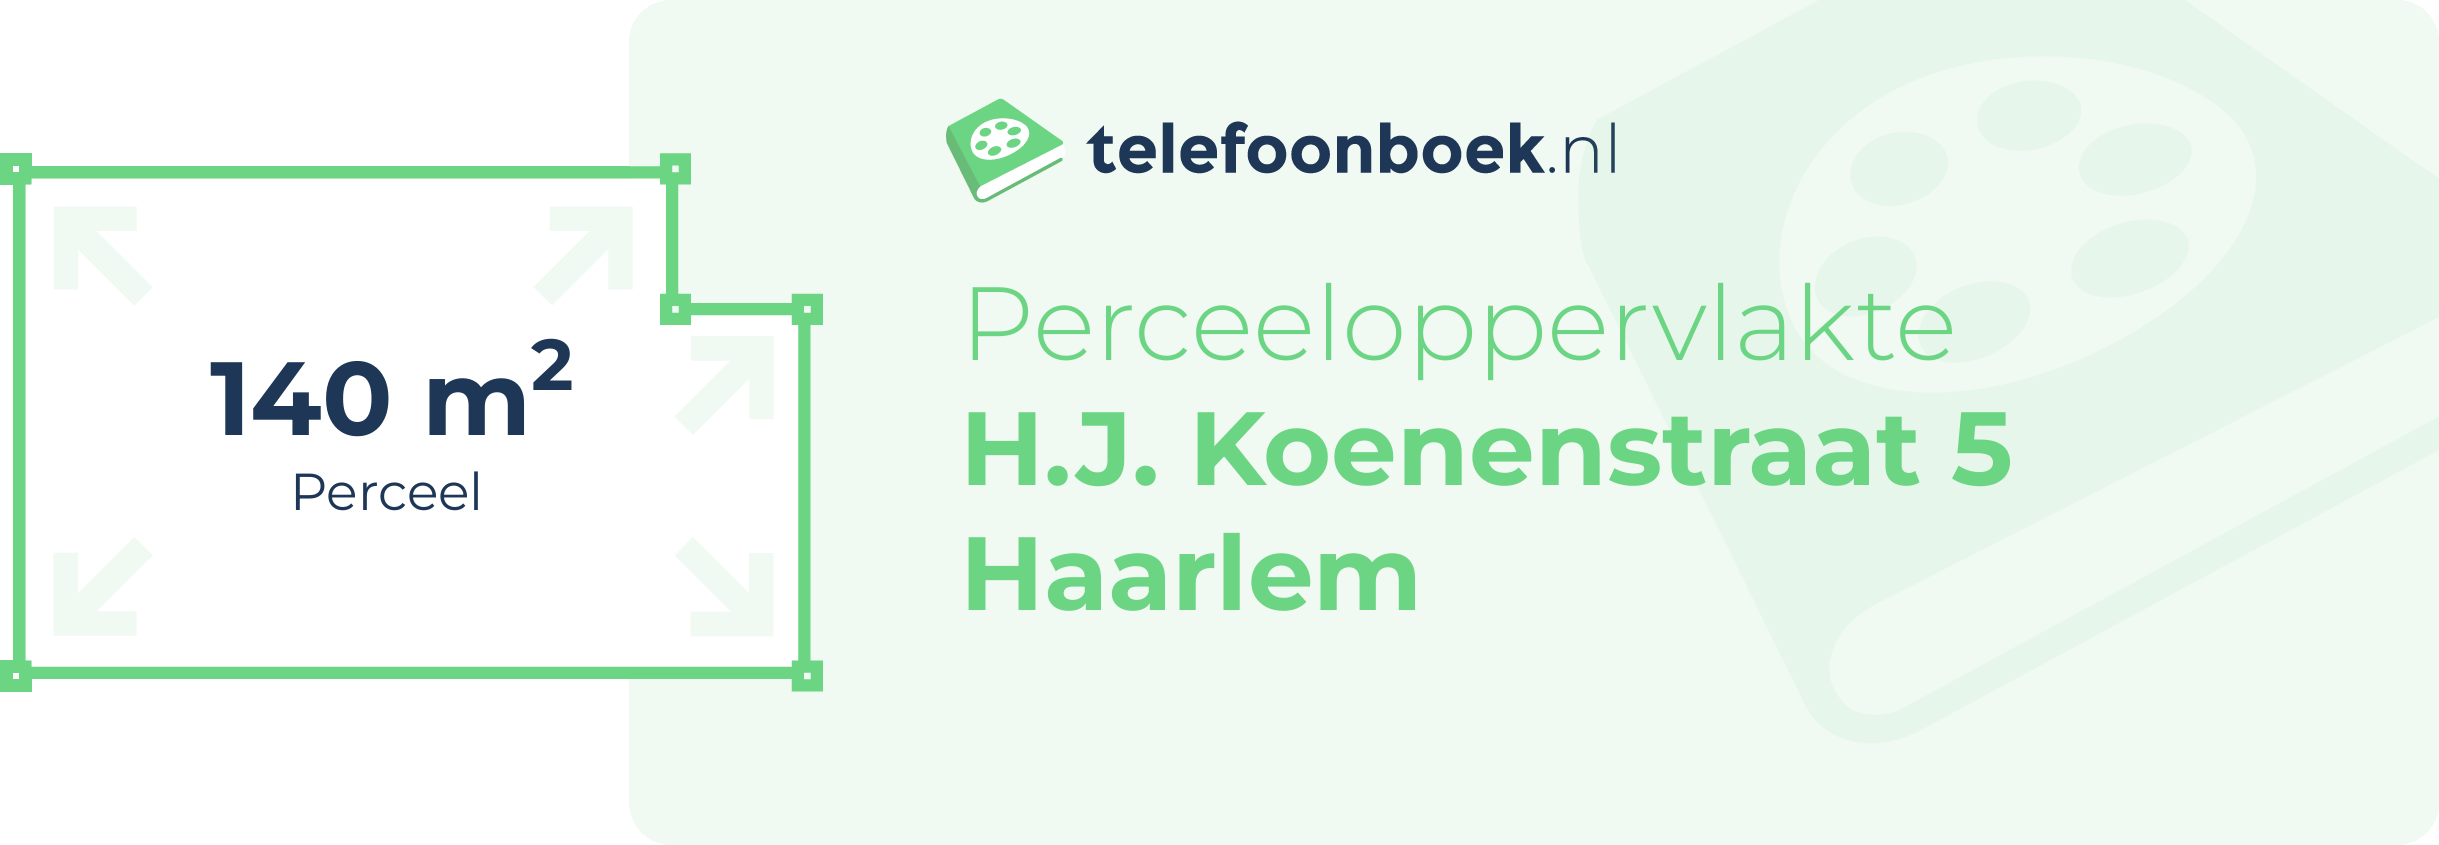 Perceeloppervlakte H.J. Koenenstraat 5 Haarlem